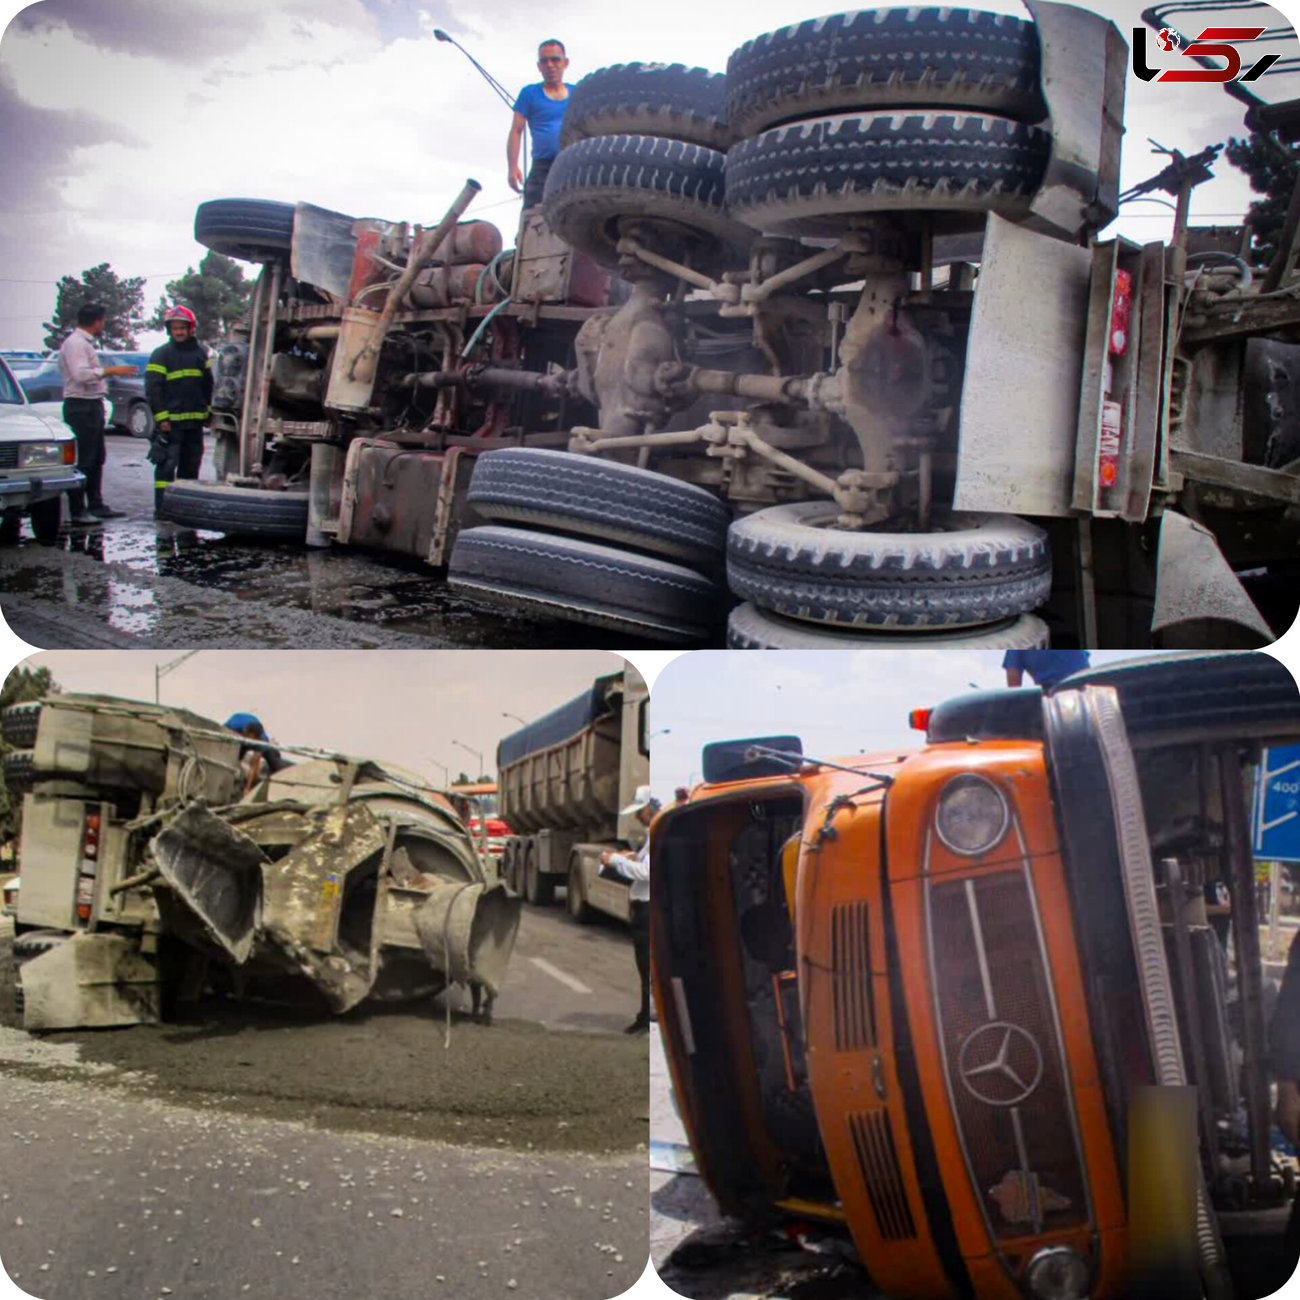 واژگونی عجیب و غریب کامیون!/ در اصفهان اتفاق افتاد! + عکس